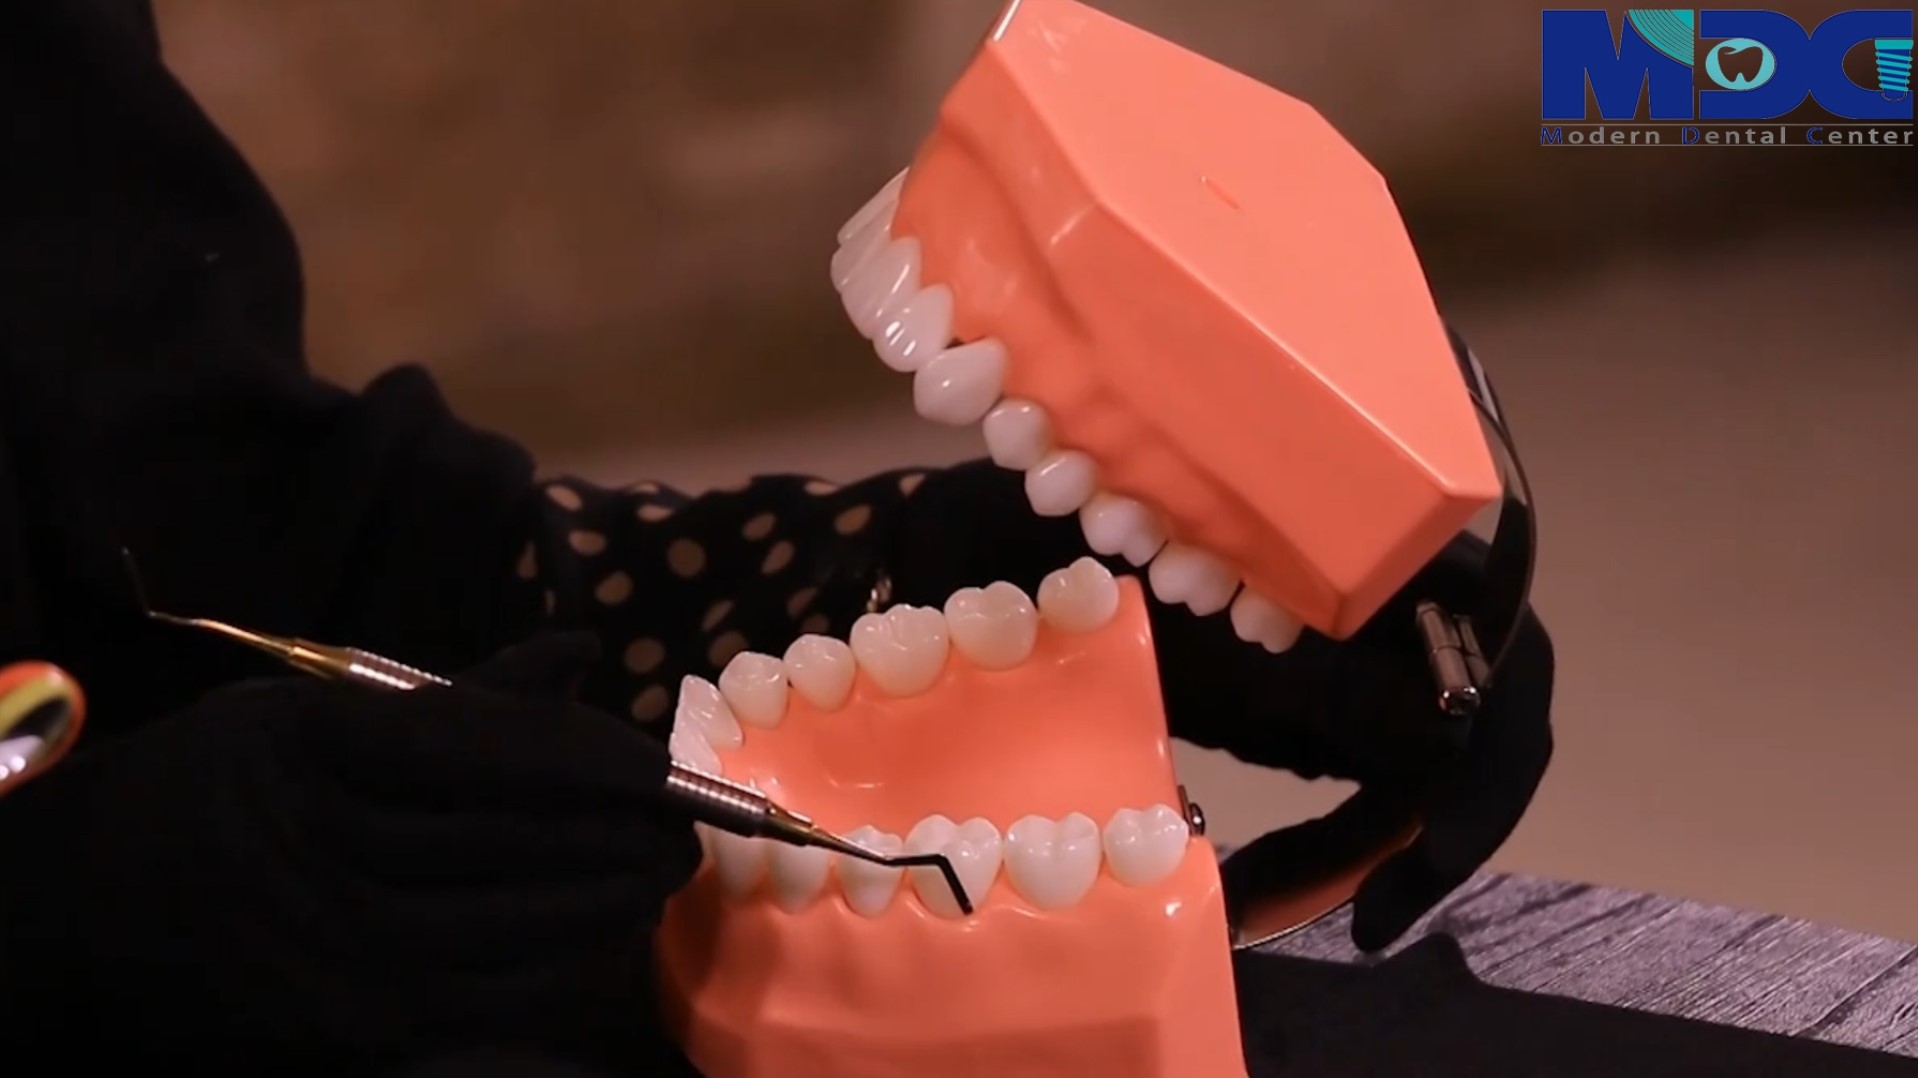 آموزش پیشگیری از پوسیدگی دندان